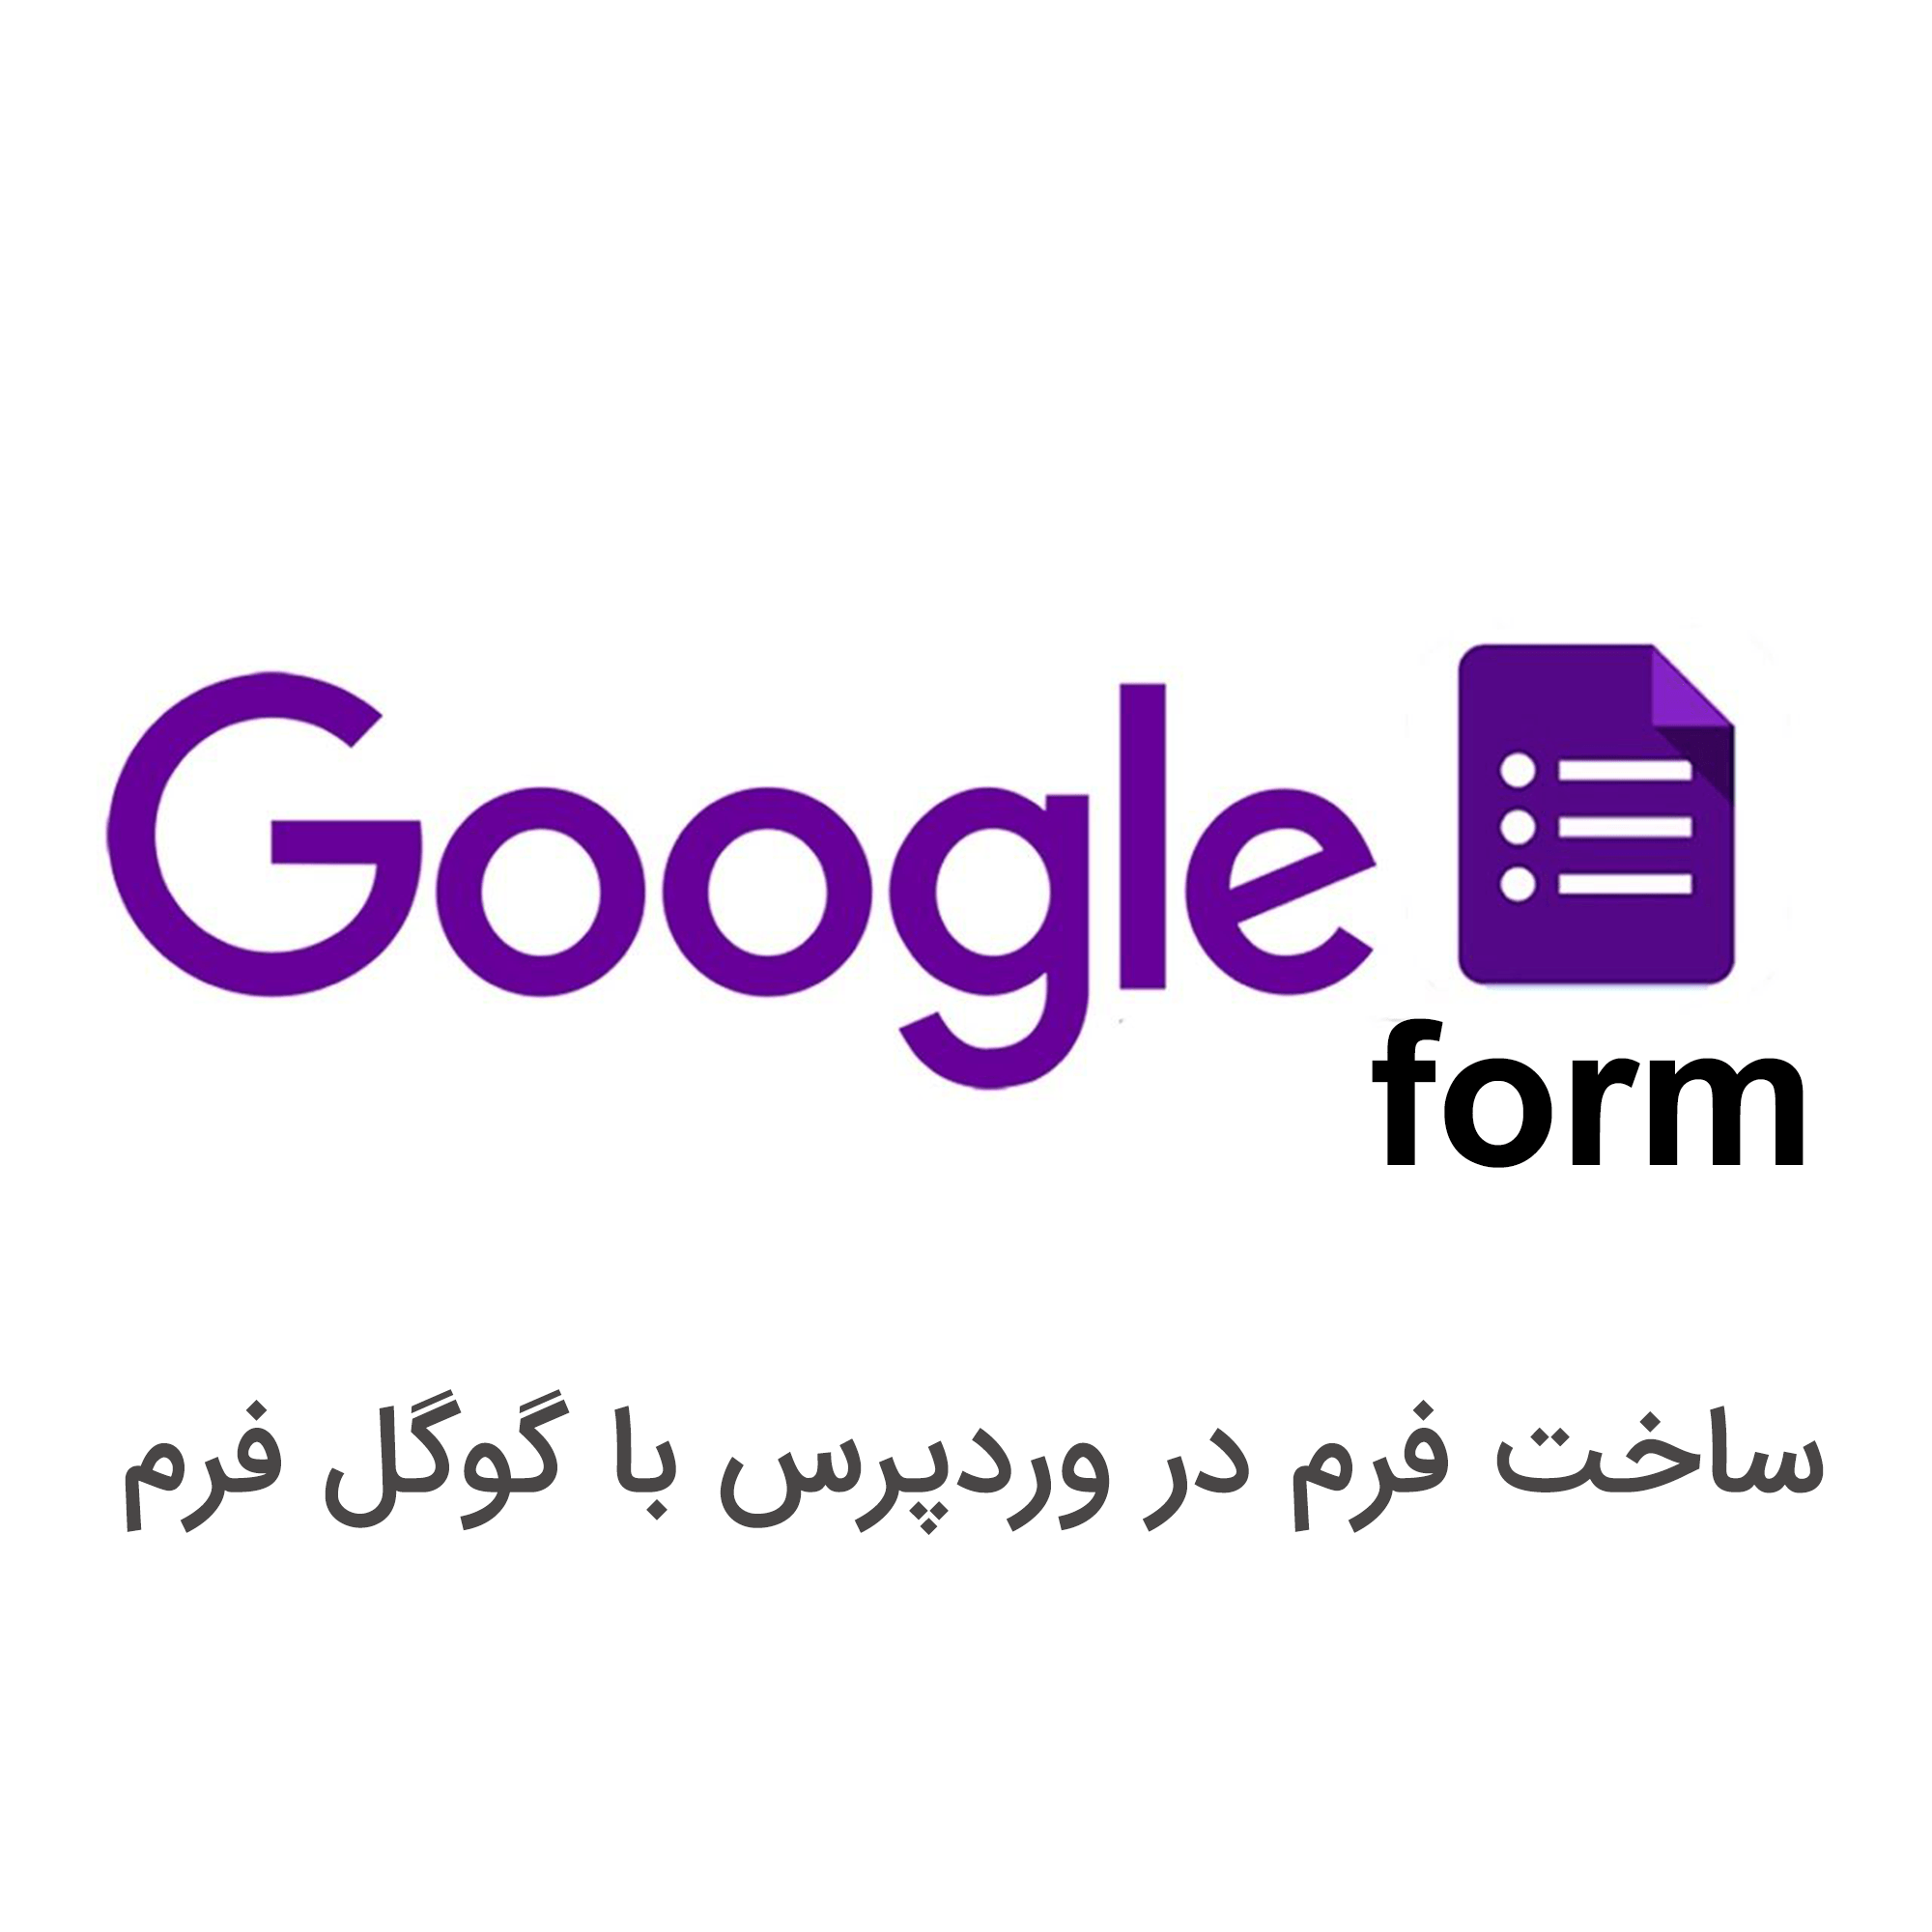 نمایش گوگل فرم در وردپرس با استفاده از Google Forms